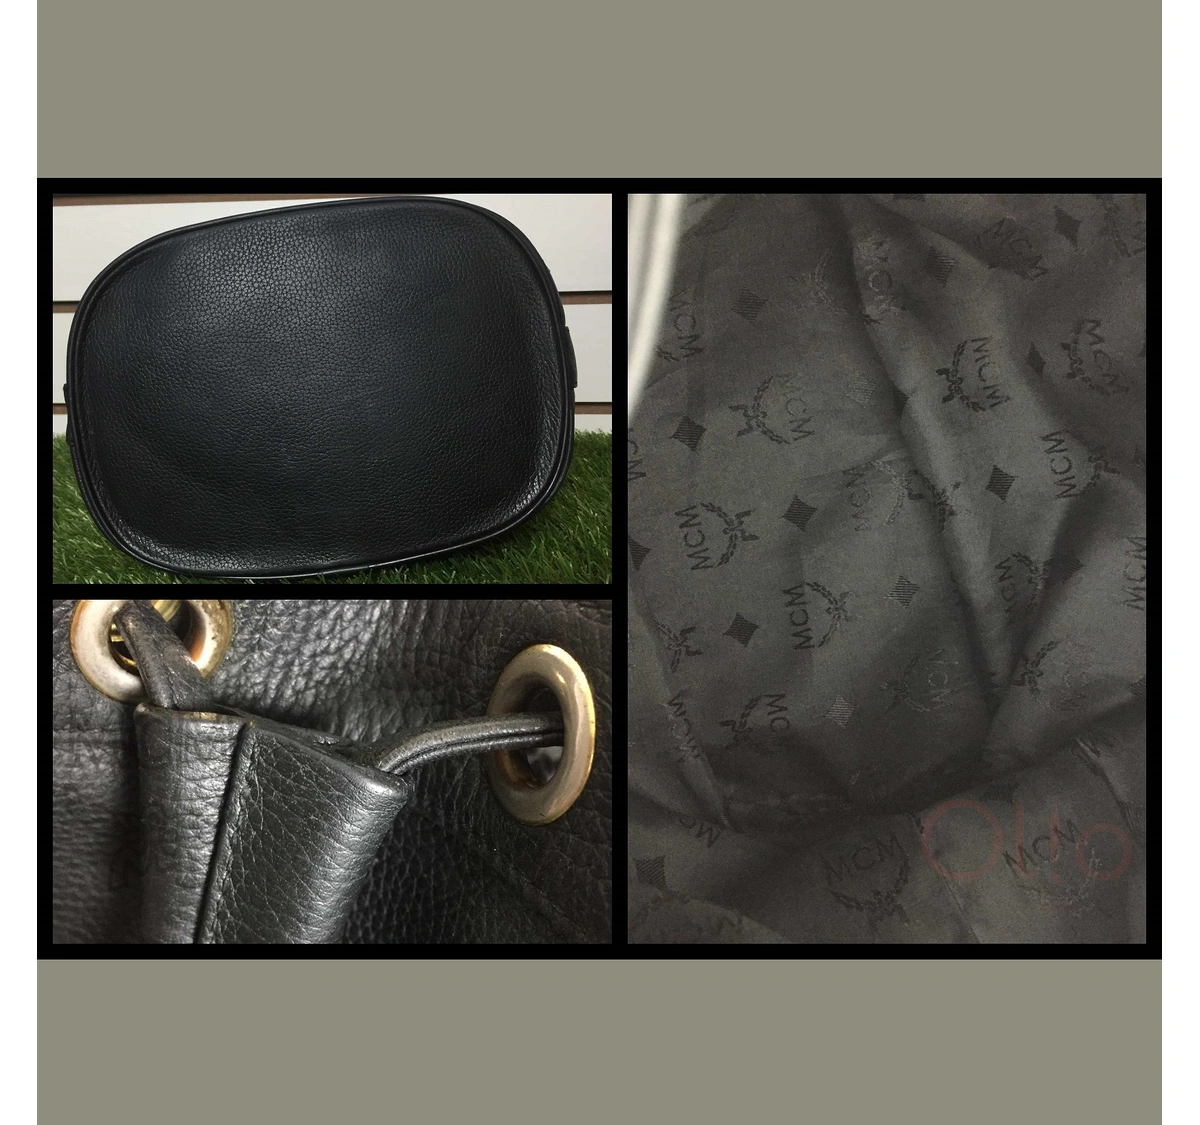 Vintage-Style MCM Leather Bucket Drawstring Shoulder Bag for